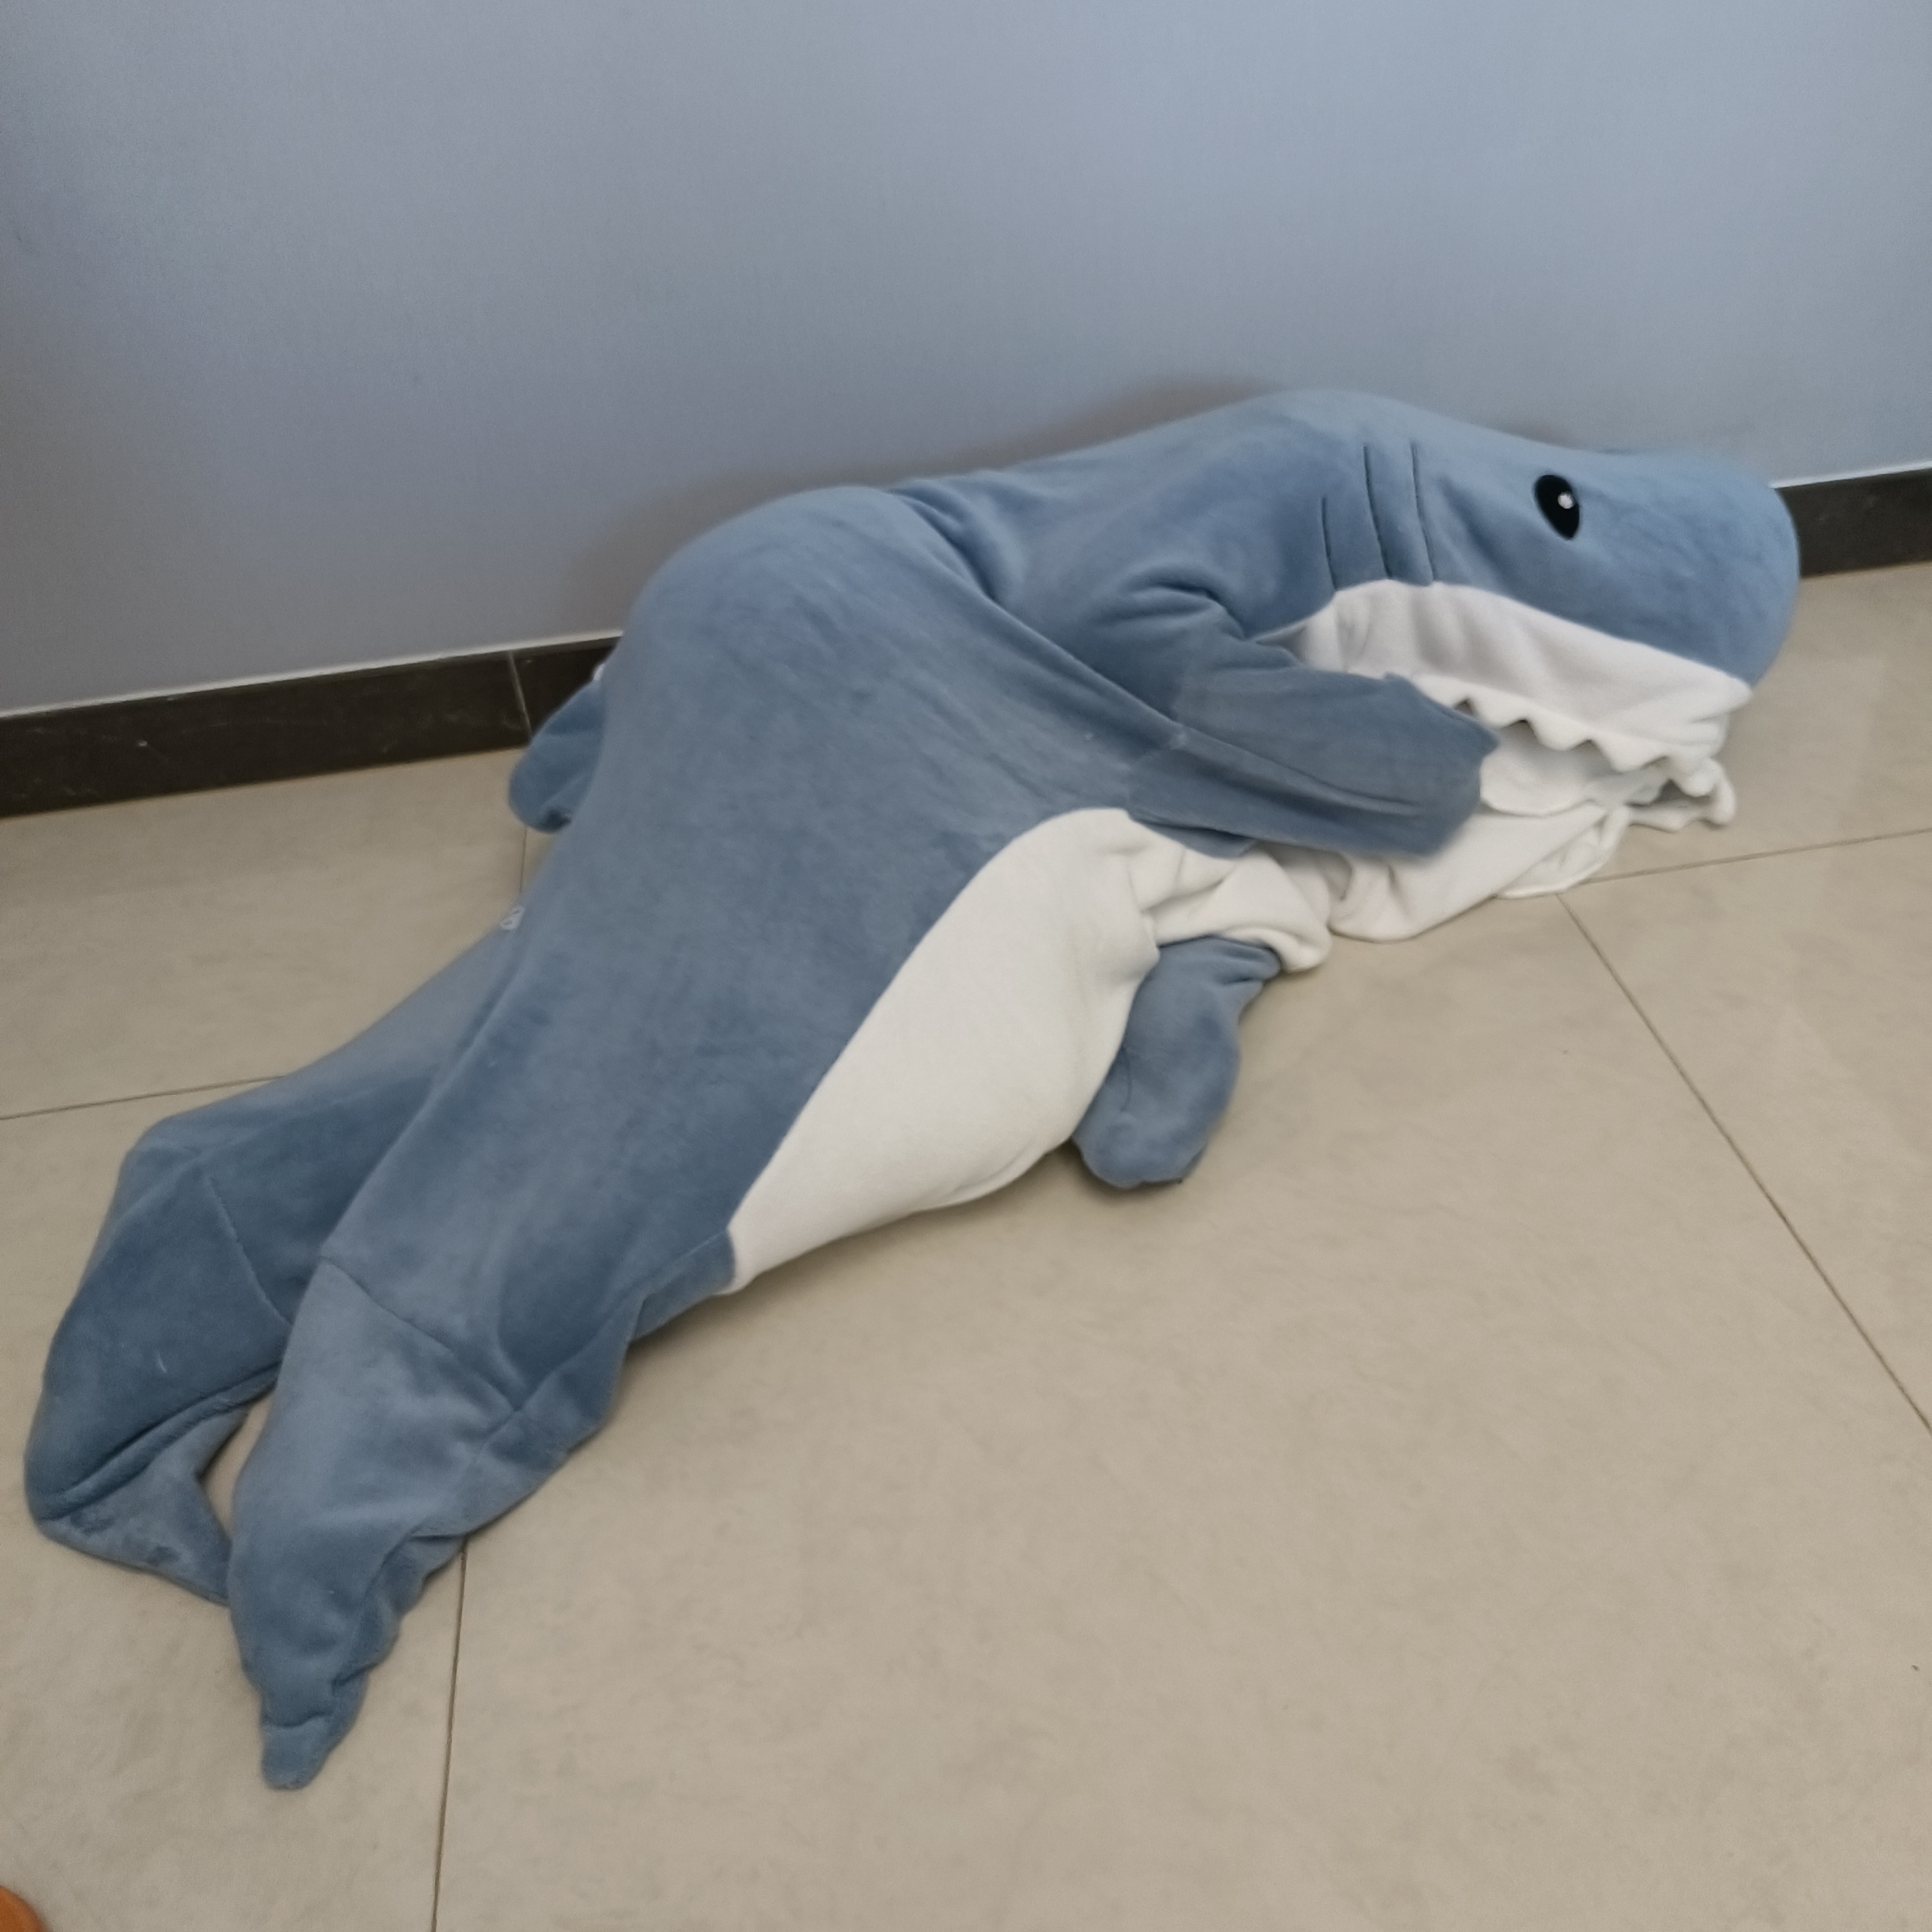 Cute Shark Giant Hoodie